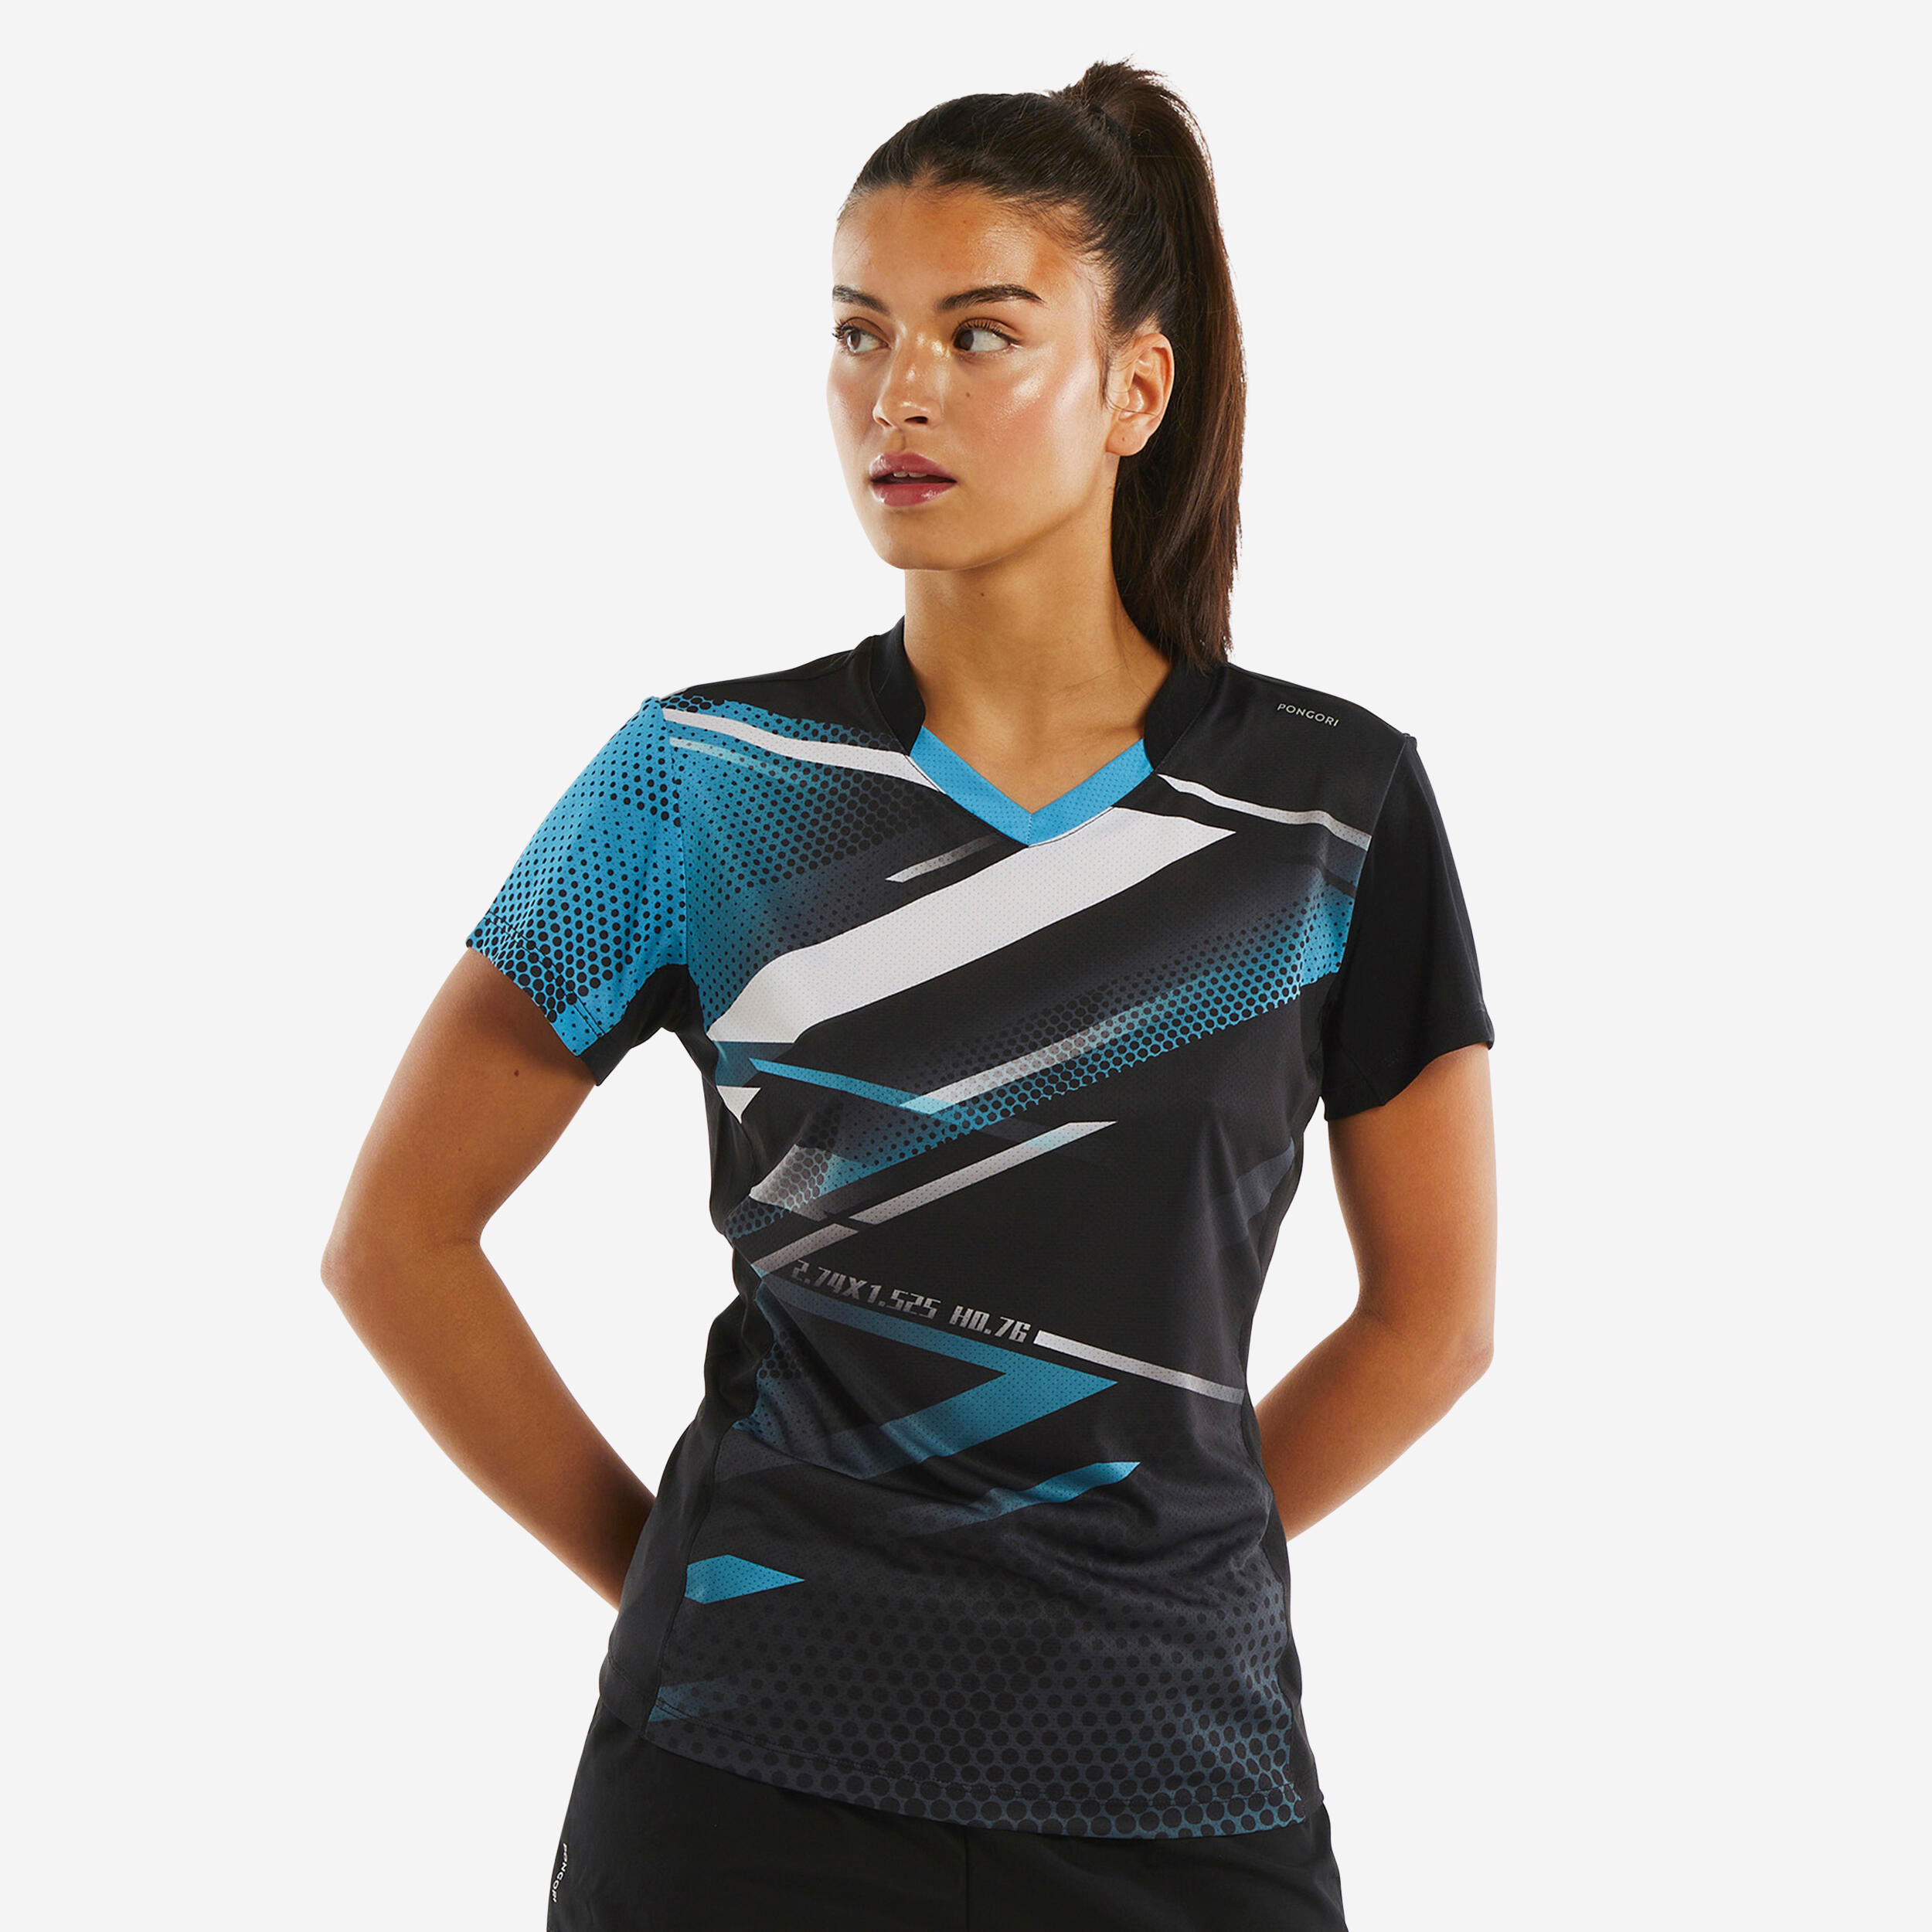 Women's Table Tennis T-Shirt TTP560 - Black/Blue 1/6